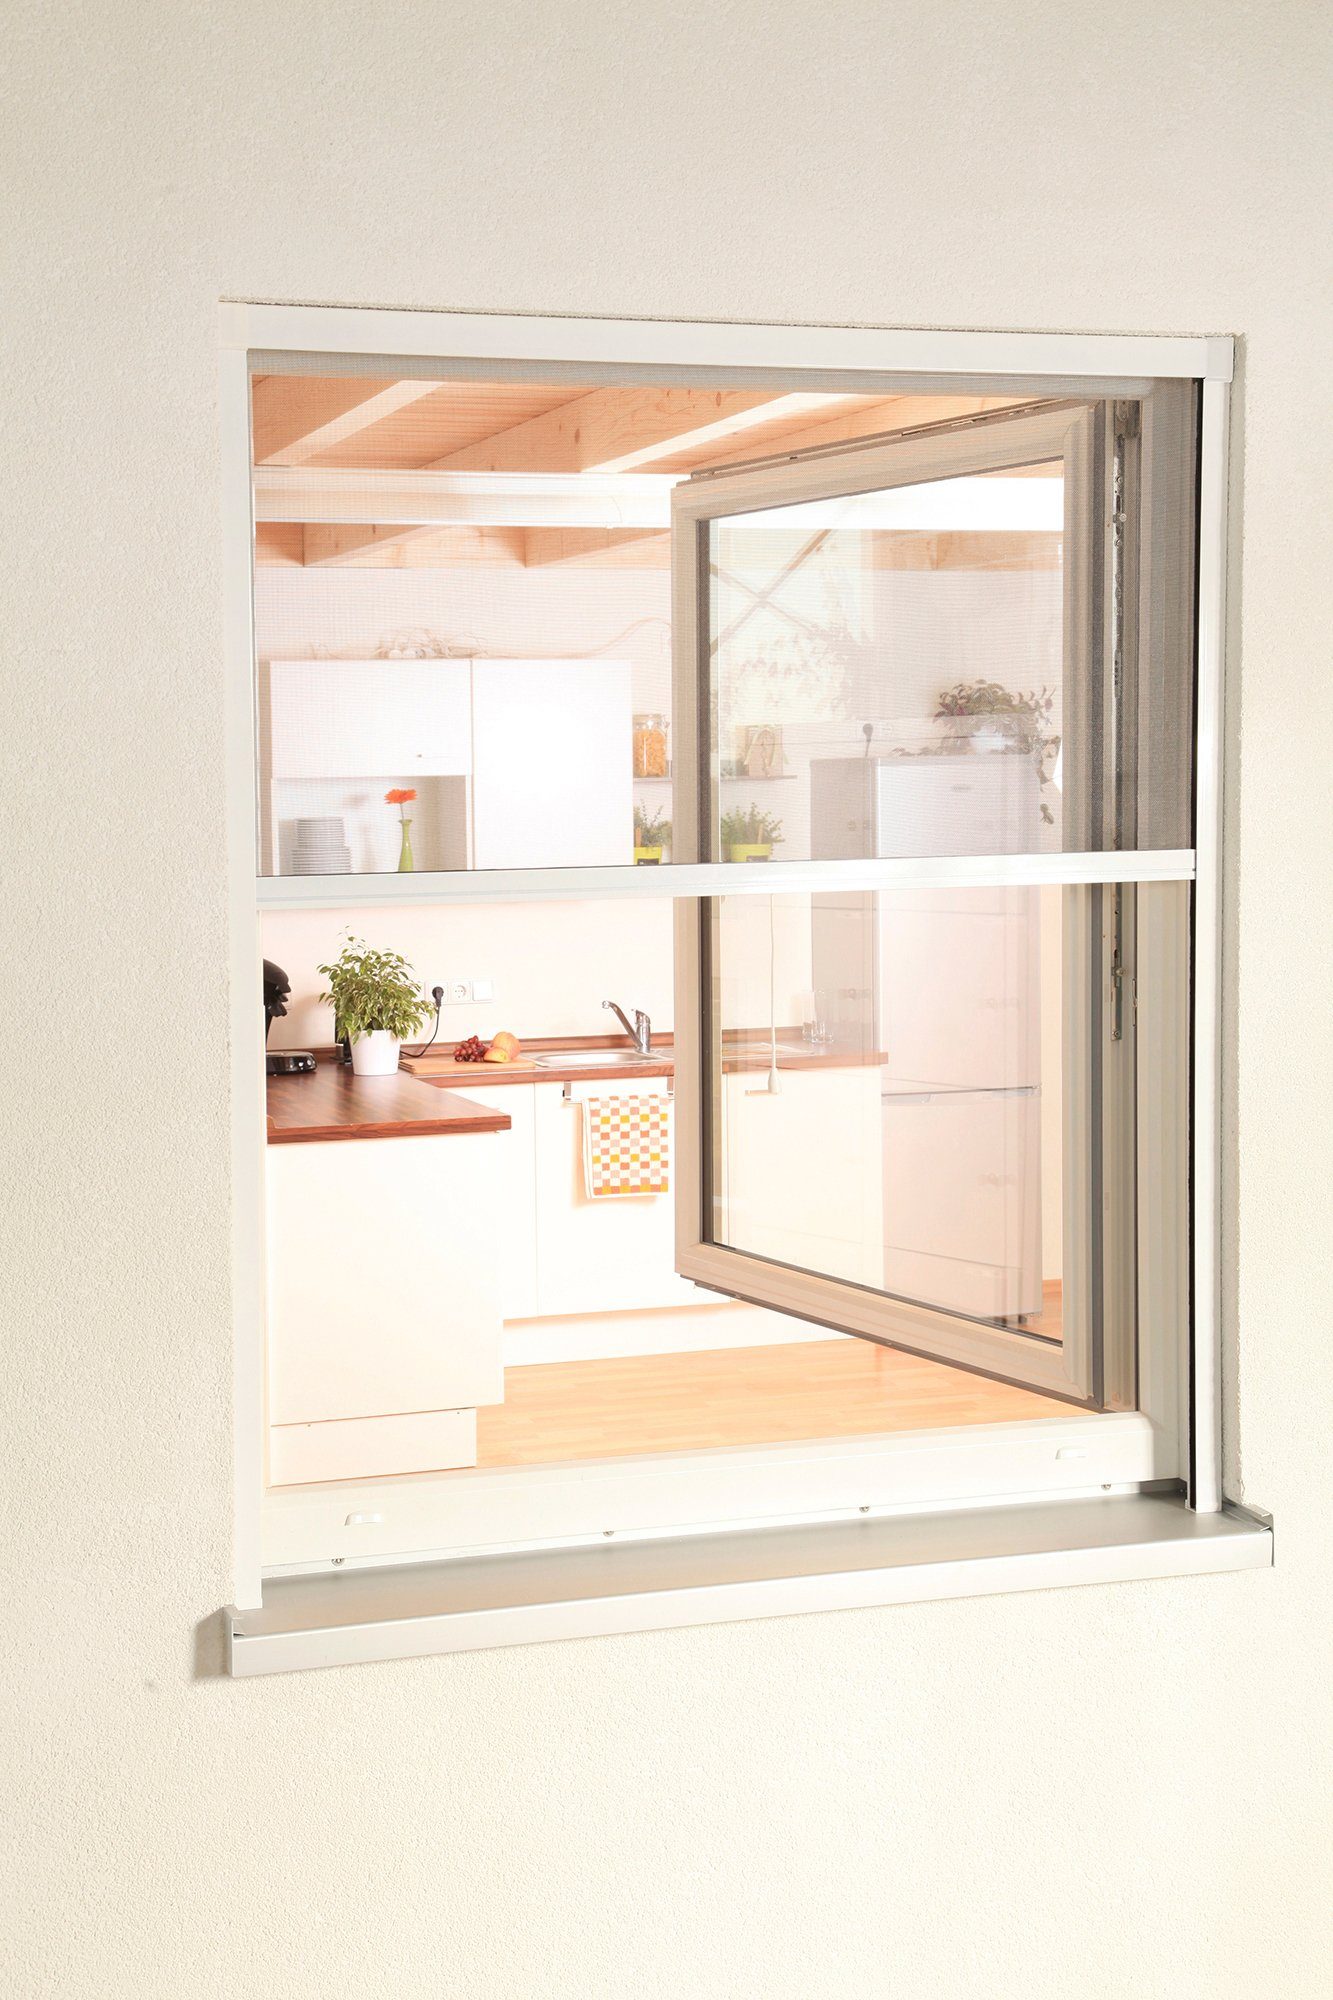 weiß/anthrazit, für Fenster, Insektenschutzrollo transparent, hecht international, verschraubt, SMART, 160x160 BxH: cm